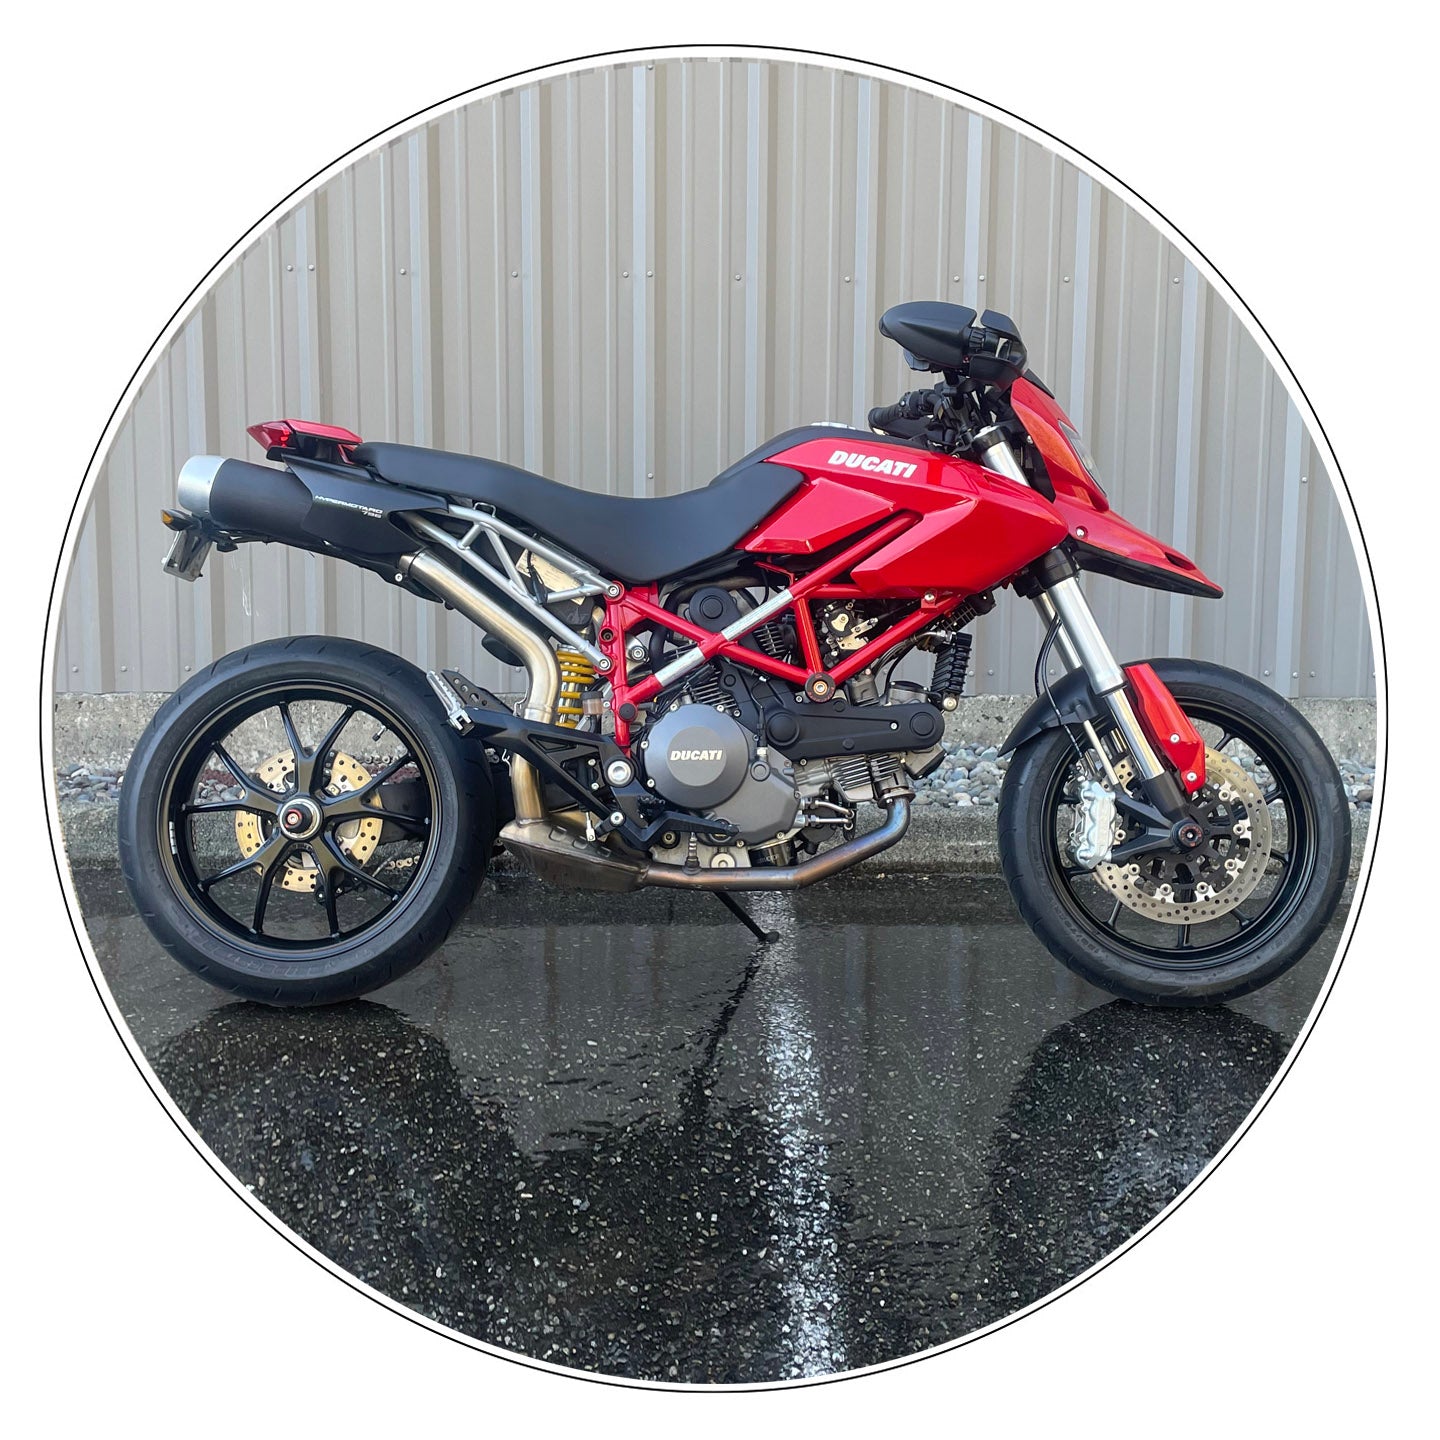 2010 Ducati Hypermotard 796 (2,835 Miles)